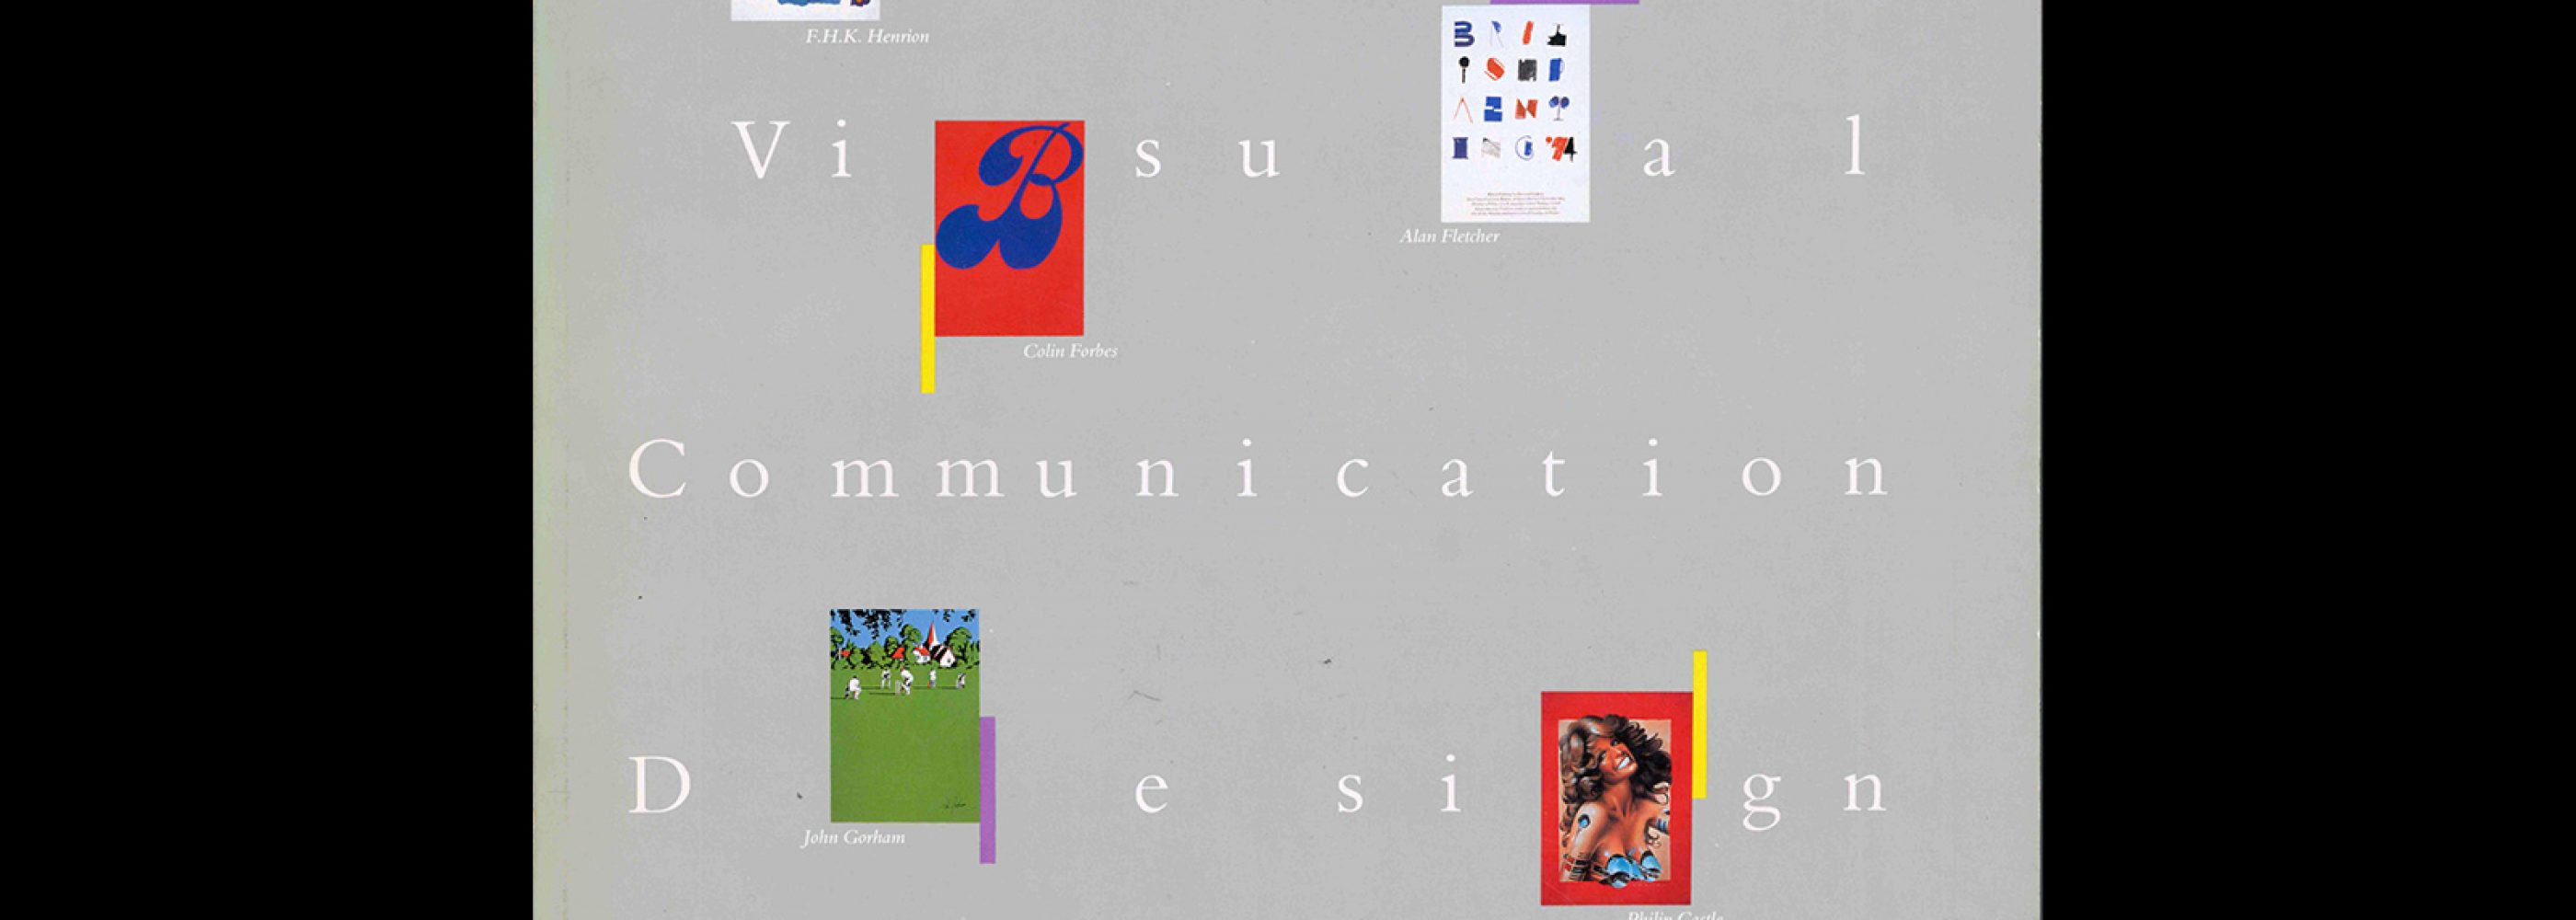 Idea Special Issue - British Visual Communication Design 1900-1985